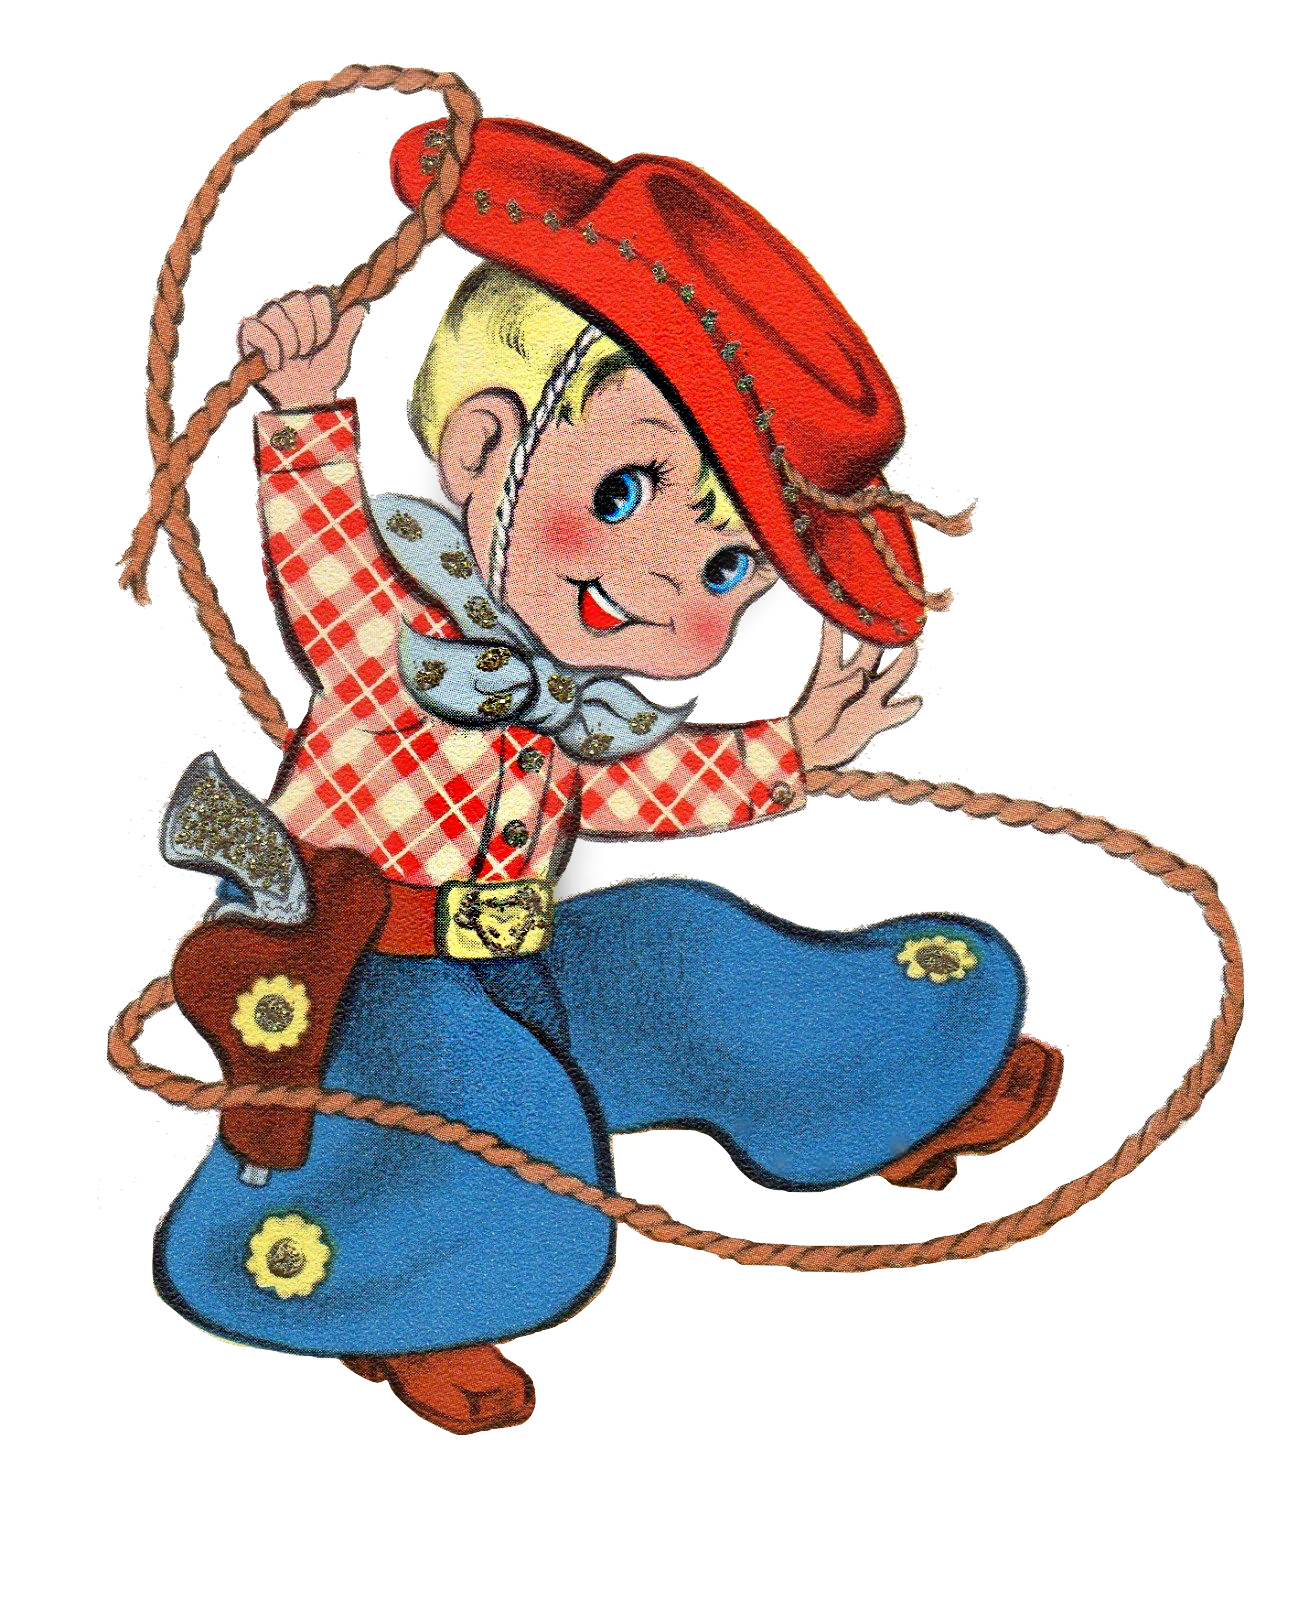 Cowboy - Cute Little Vintage Cowboy